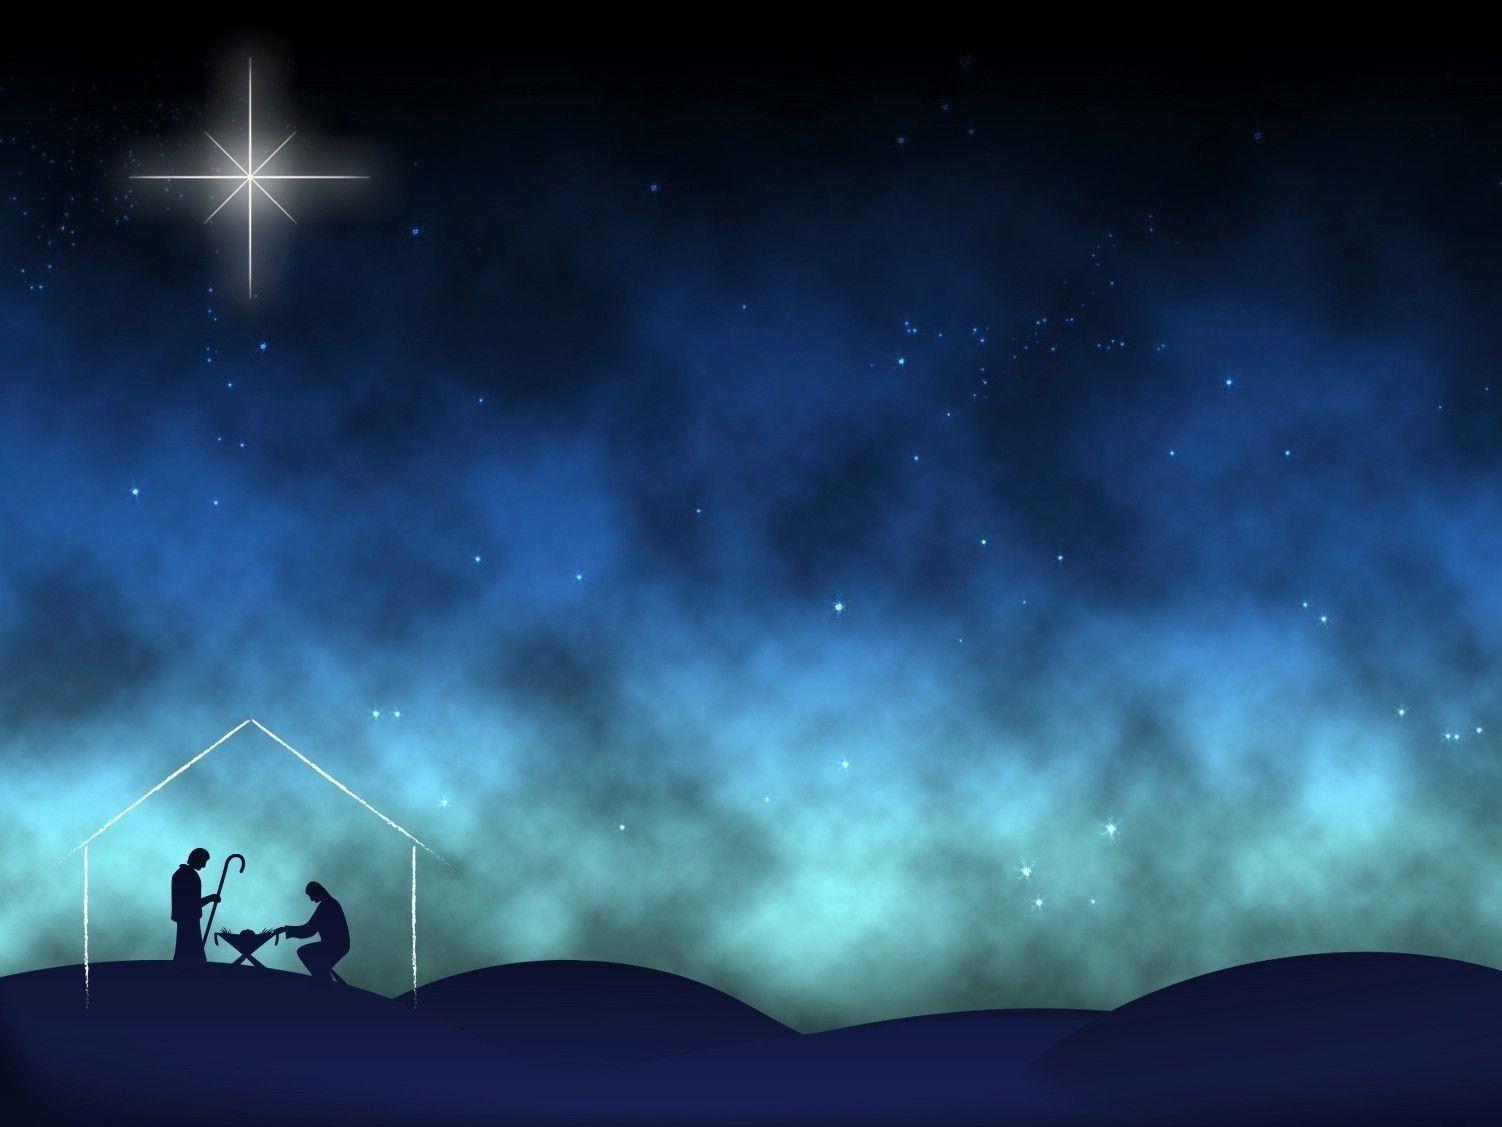 Christmas Nativity Wallpapers - Top Hình Ảnh Đẹp